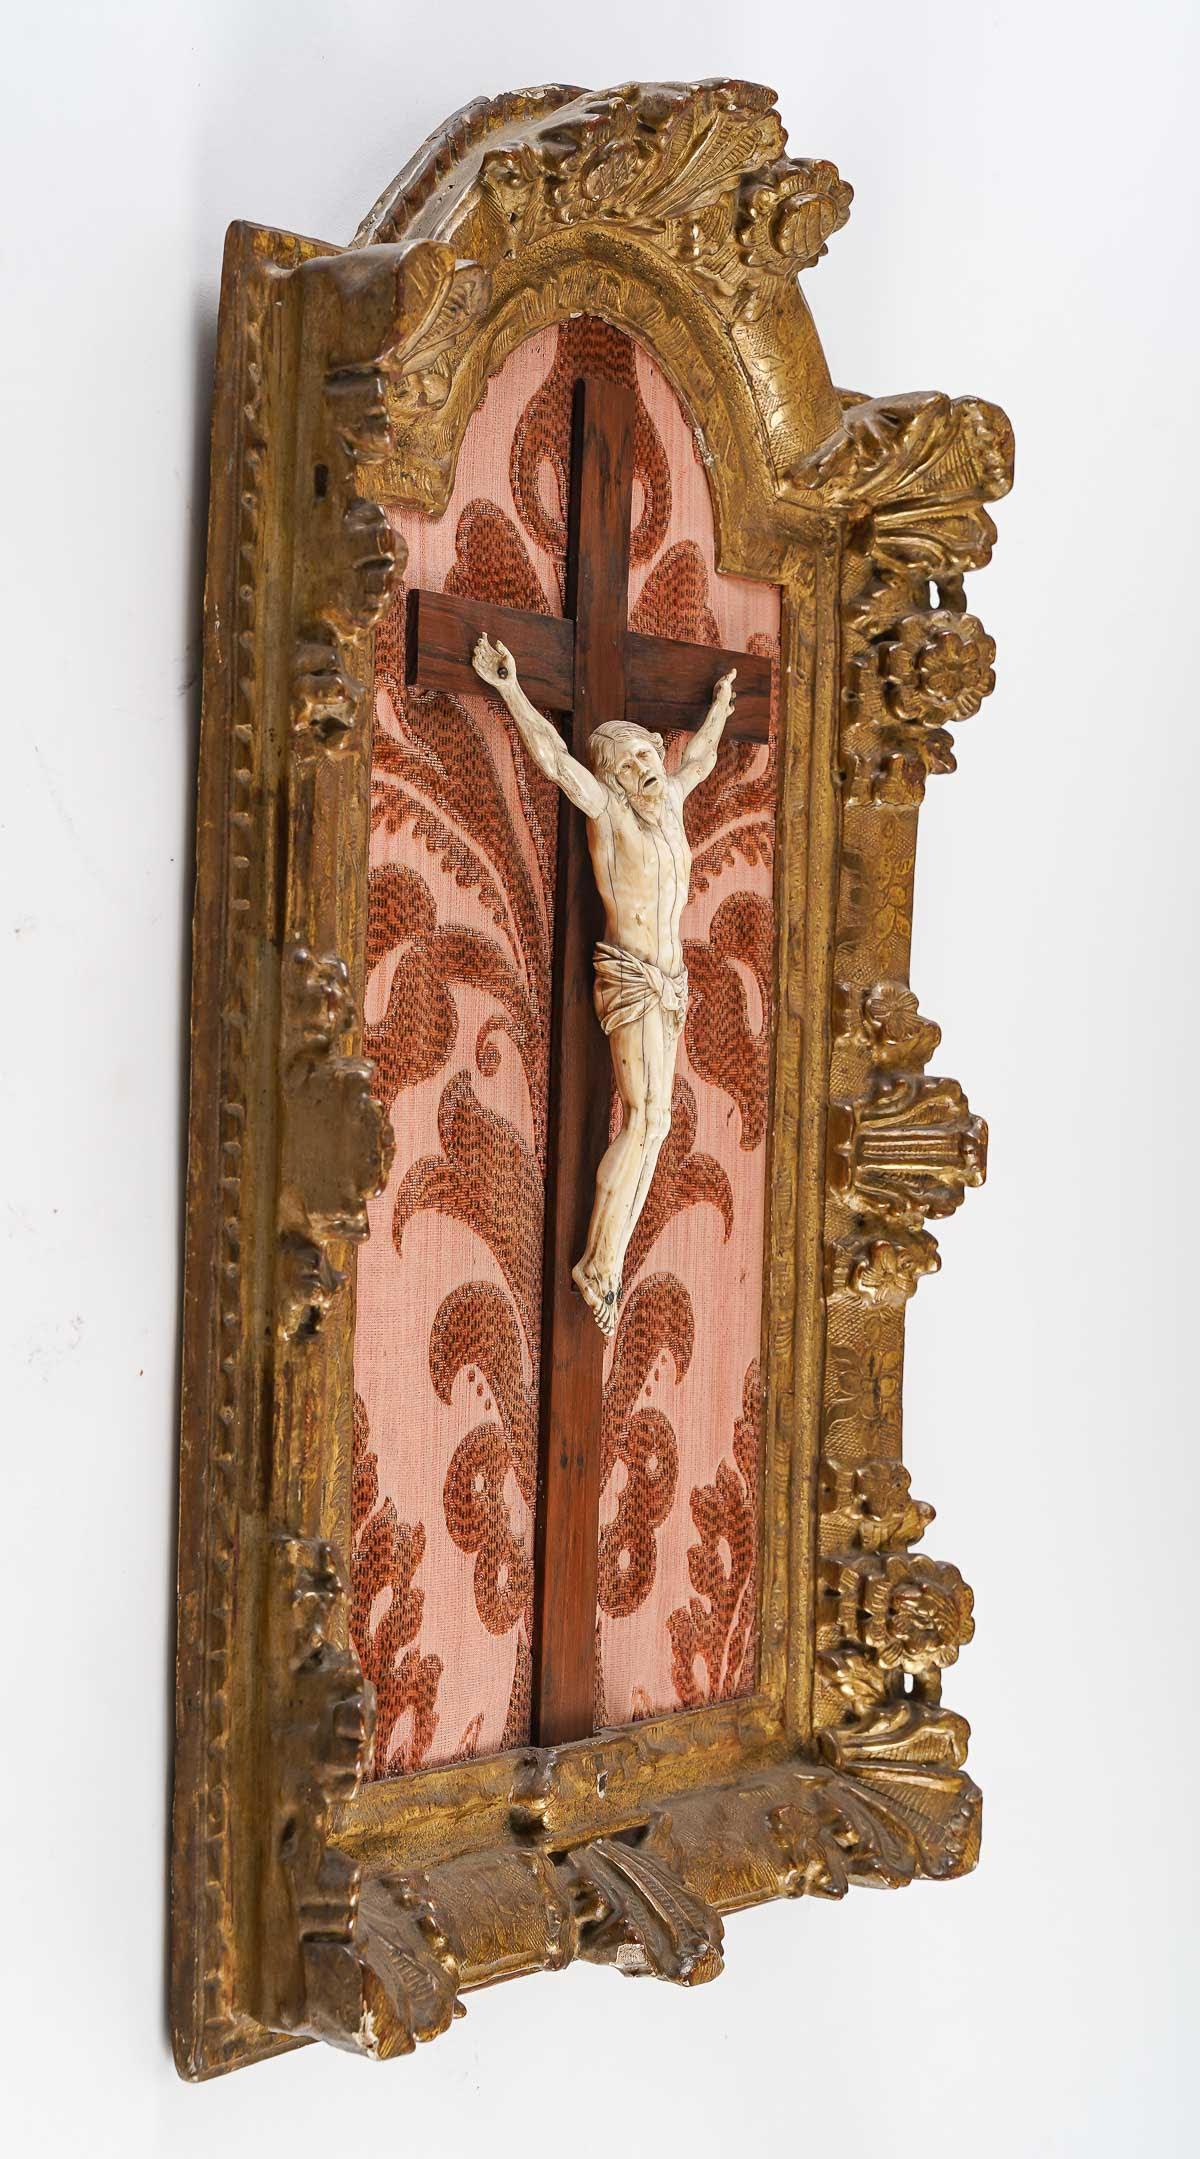 Christ, 18e siècle.

Crucifix, Christ, beau cadre en bois sculpté et doré, XVIIIe siècle.

Dimensions : H : 61cm, L : 39cm, P : 7cm : H : 61cm, L : 39cm, P : 7cm.